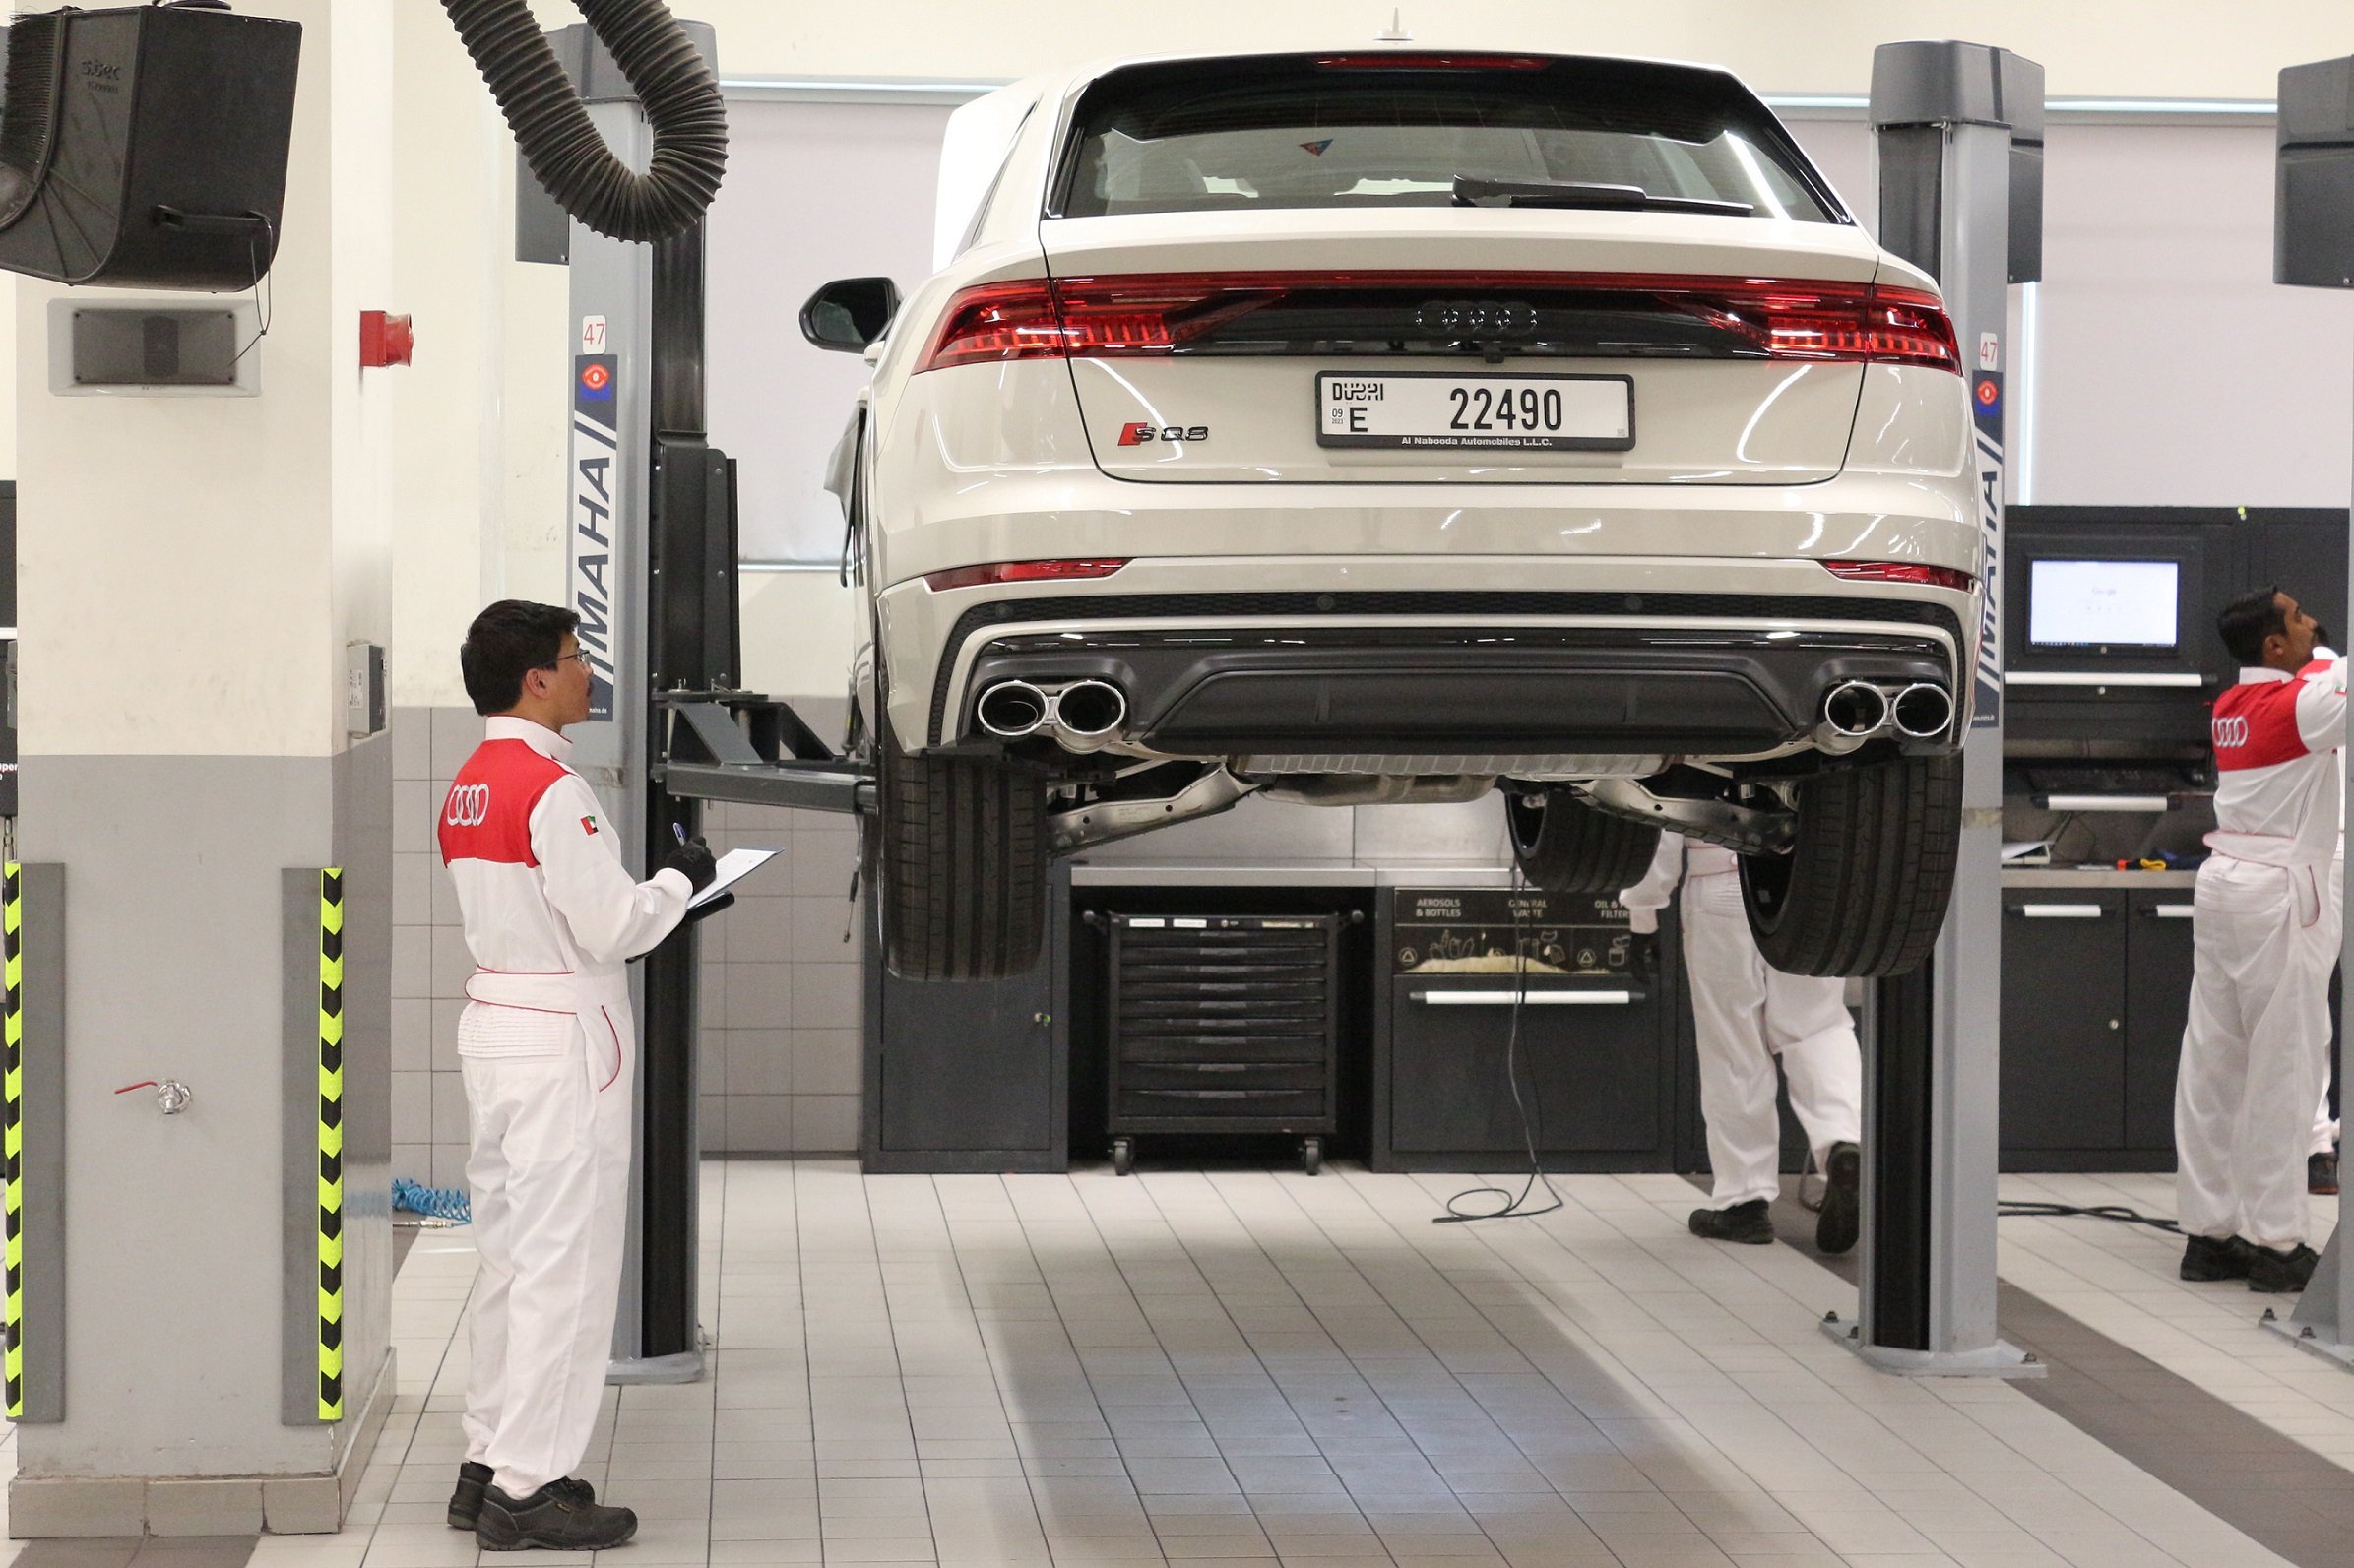 Audi, Al Nabooda Automobiles introduces innovative 'Pit Stop Service' at Dubai service center